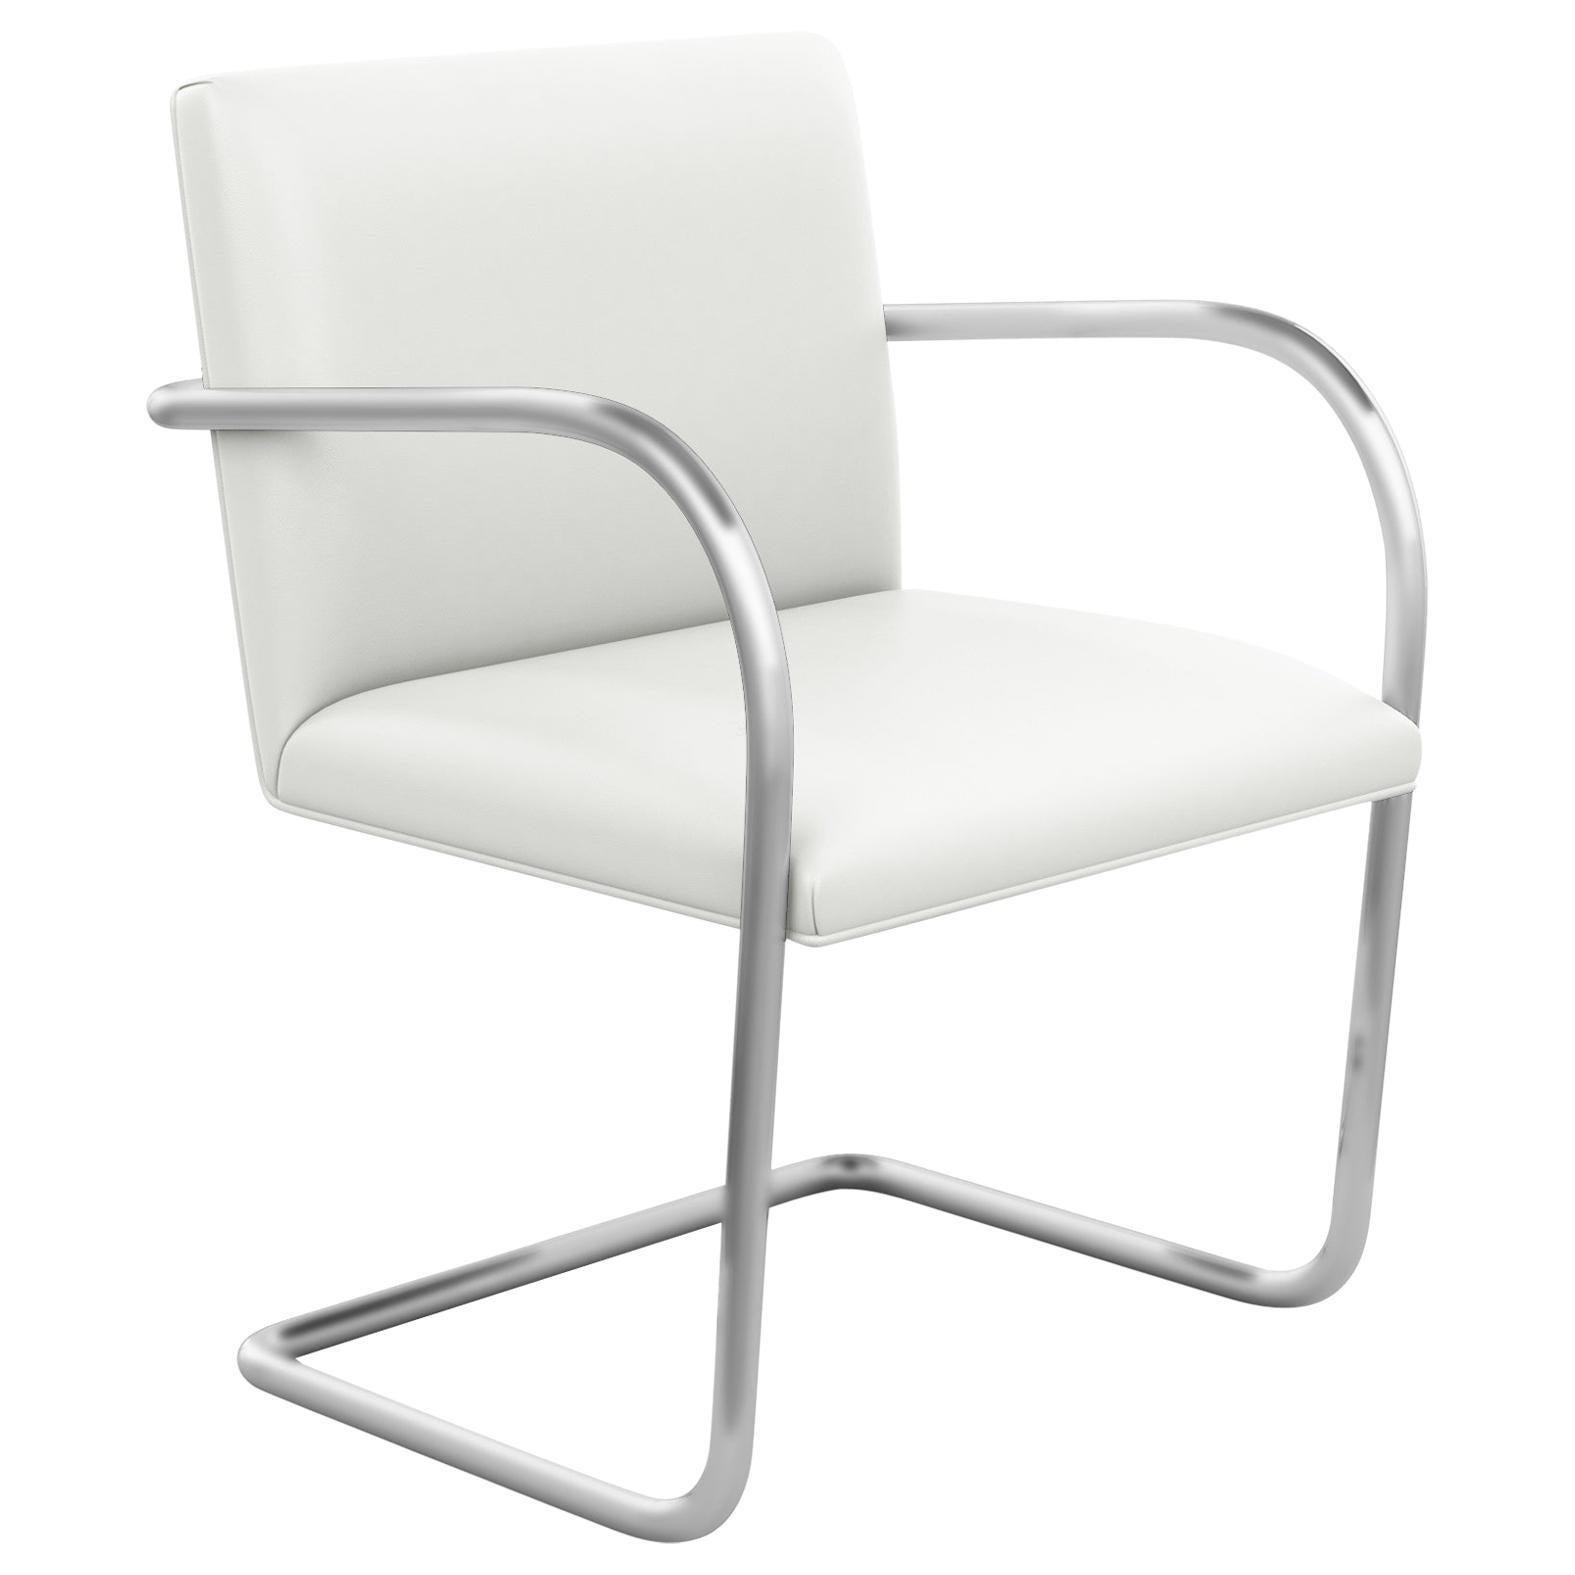 Tubular Brno Arm Chair, Sabrina/White Leather Upholstery & Satin Chrome Frame For Sale